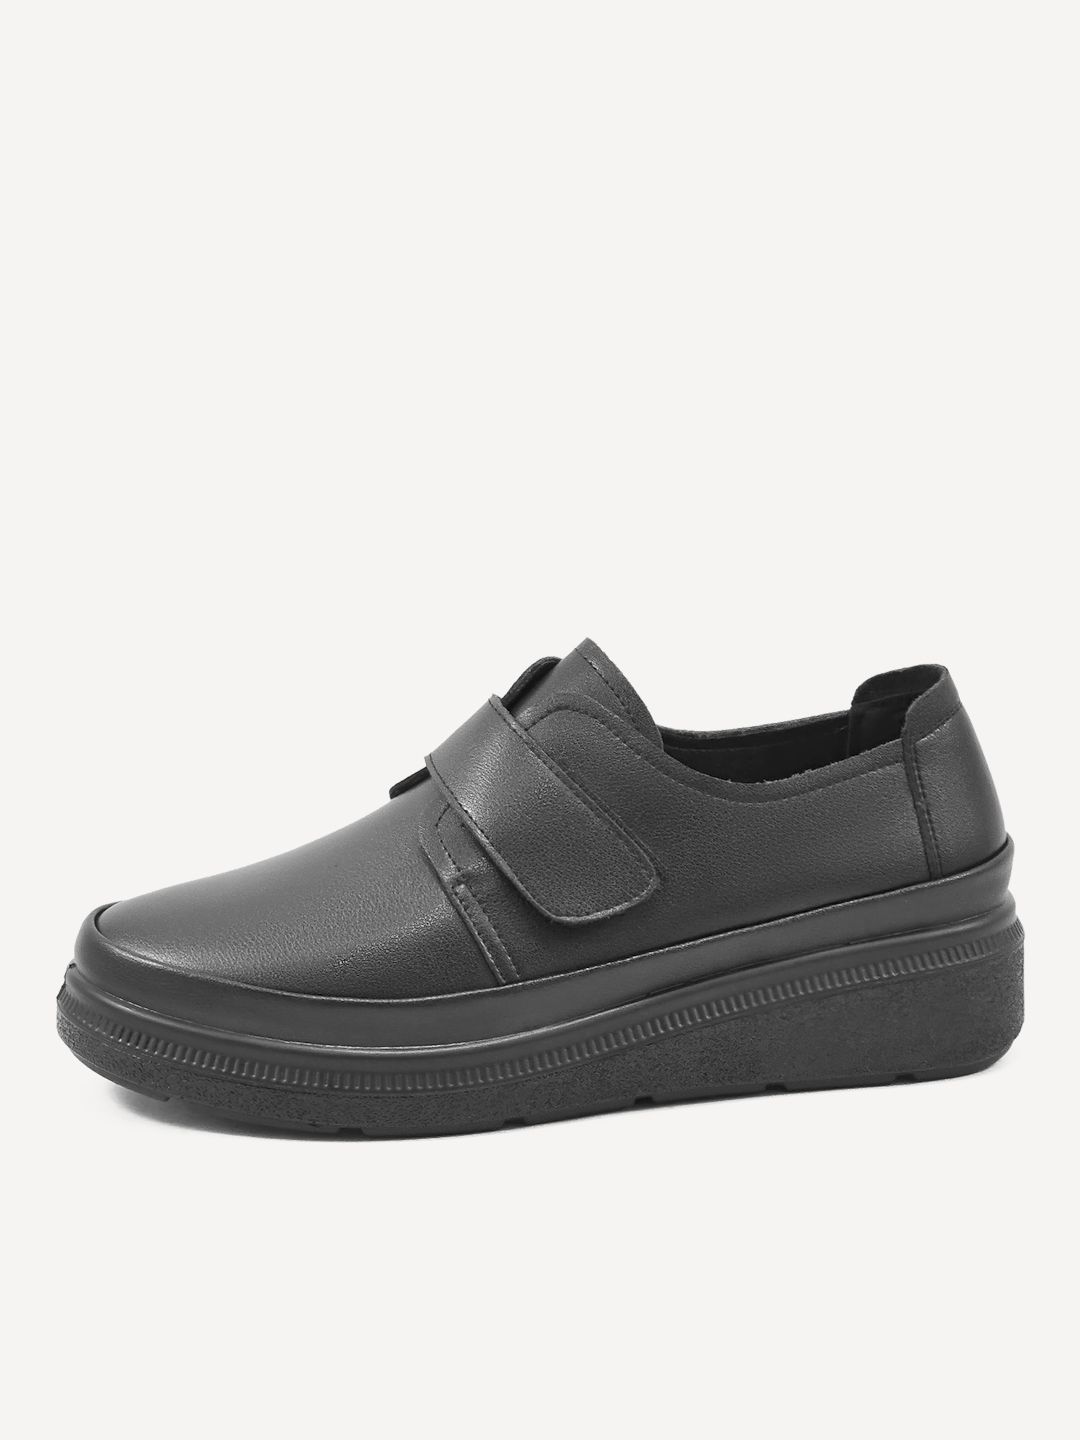 Туфли женские Baden RH152-020 черные 40 RU